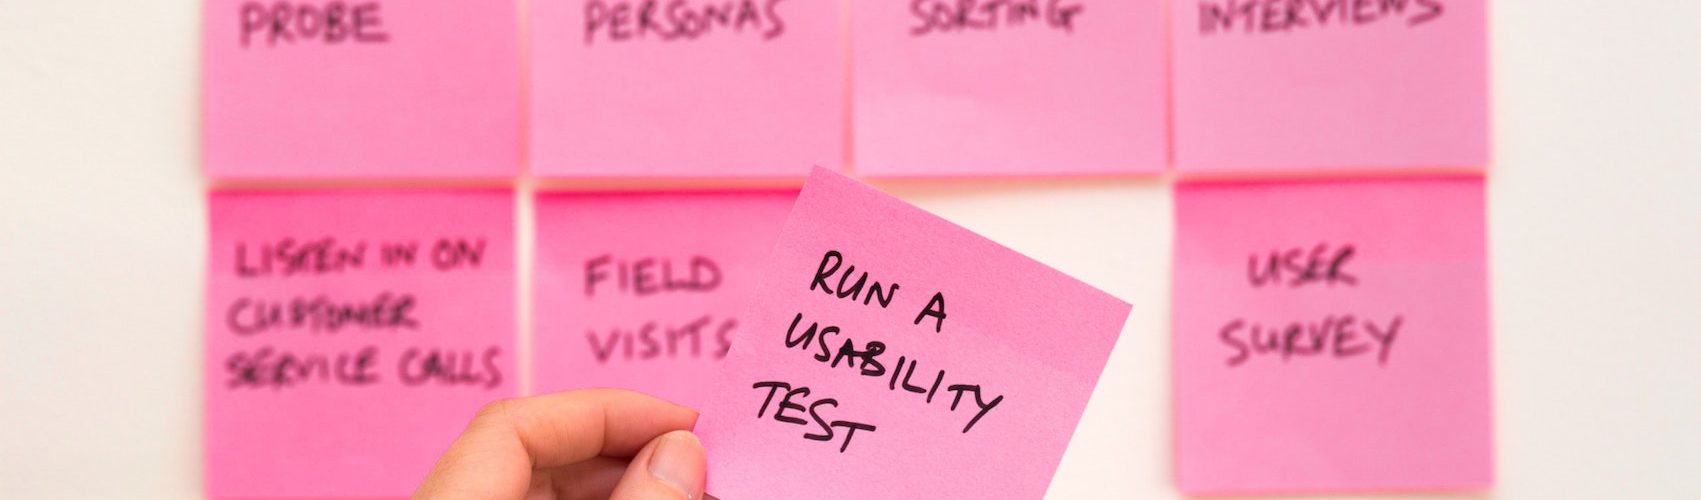 Melhores ferramentas de teste de usabilidade